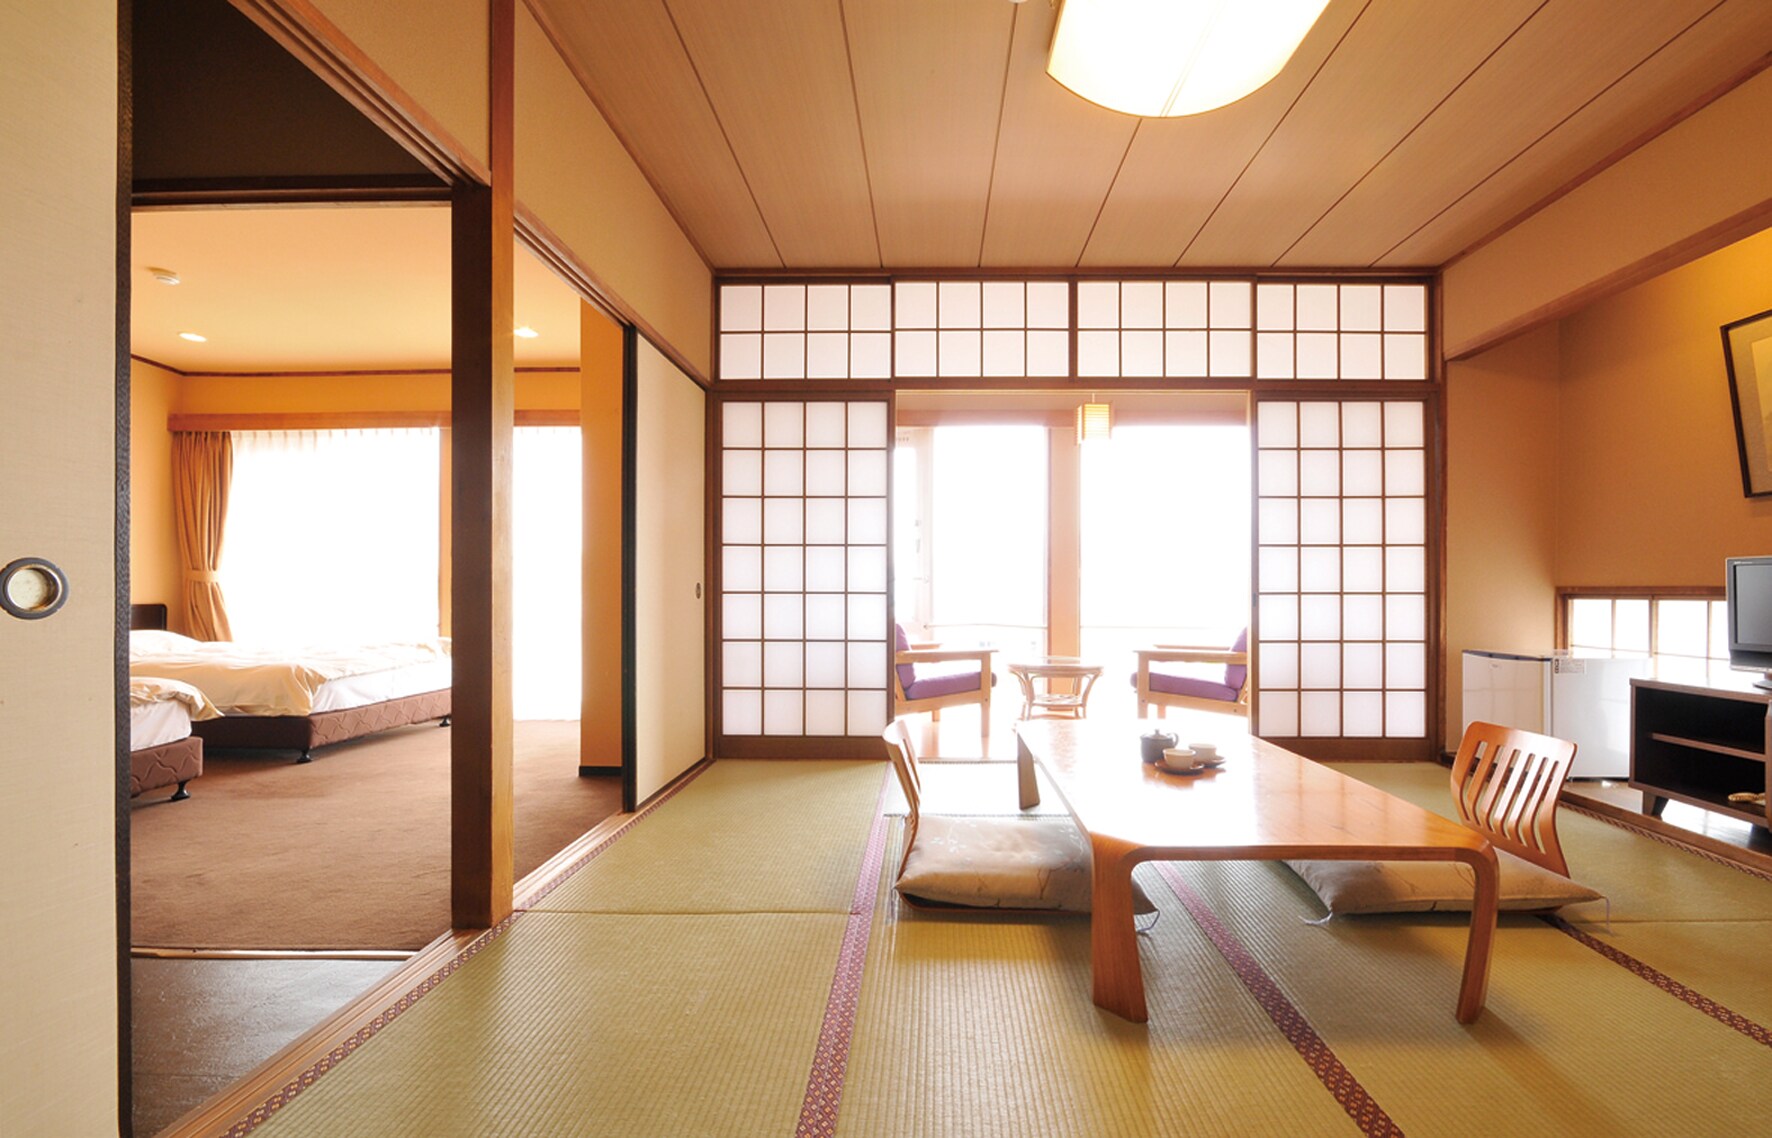 ห้องญี่ปุ่นและตะวันตก (ภาพ)